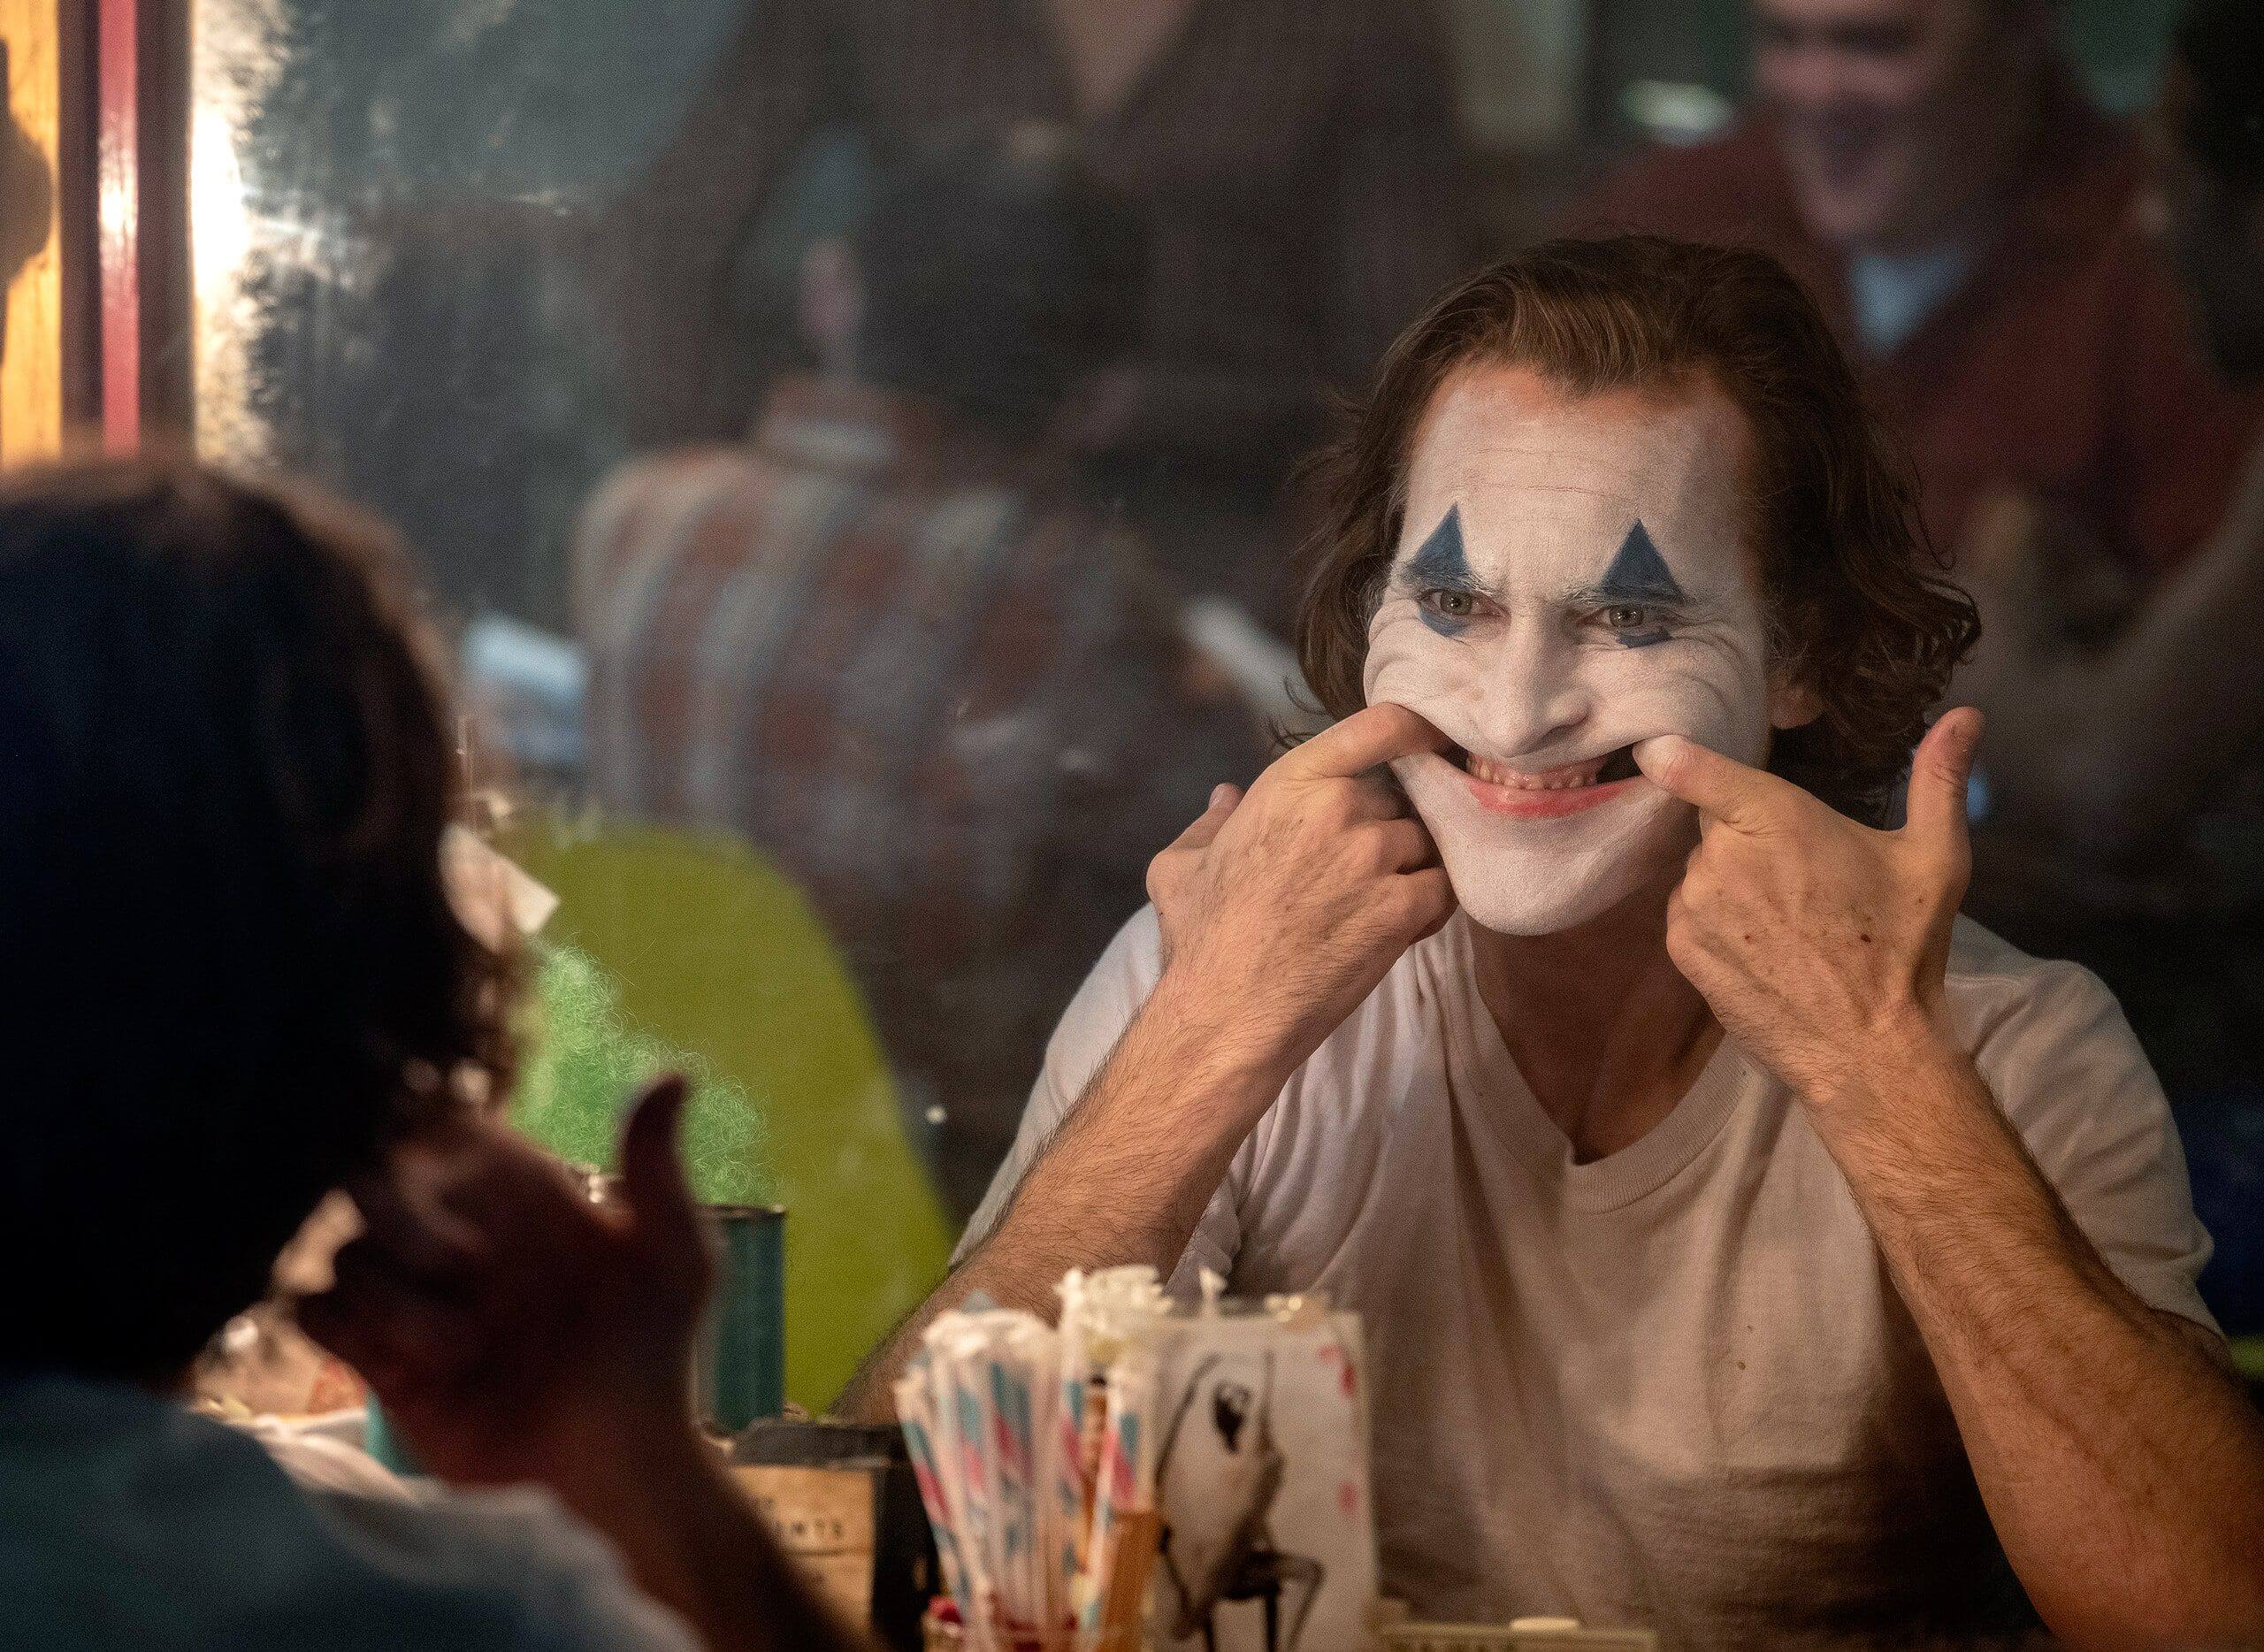 Já está contratado o argumentista da sequela de “Joker”, caso o filme seja confirmado